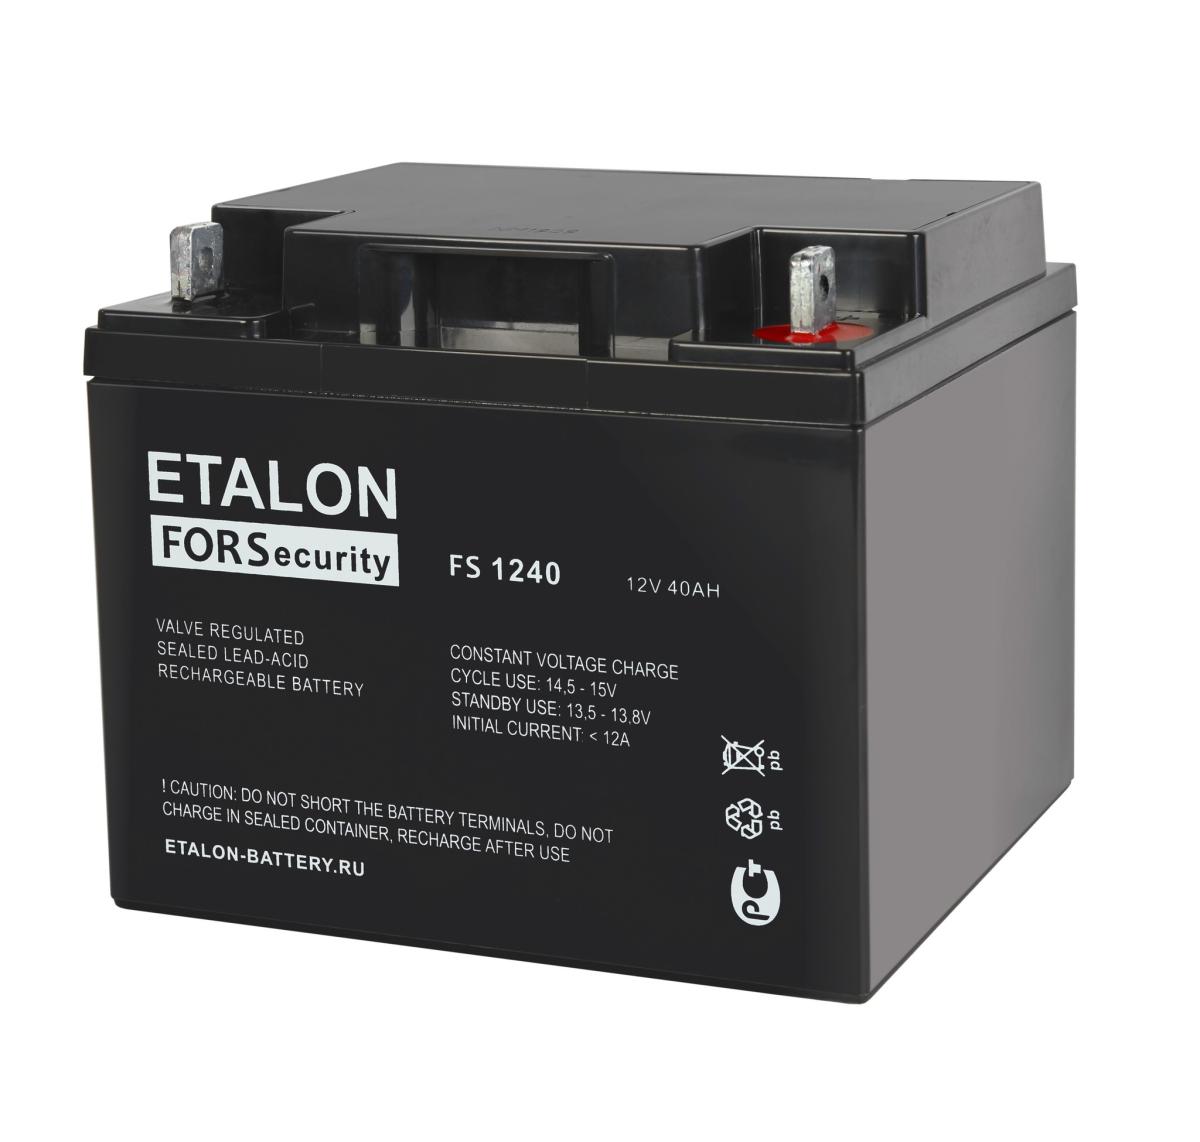 ETALON FORS 1240 Аккумулятор герметичный свинцово-кислотный